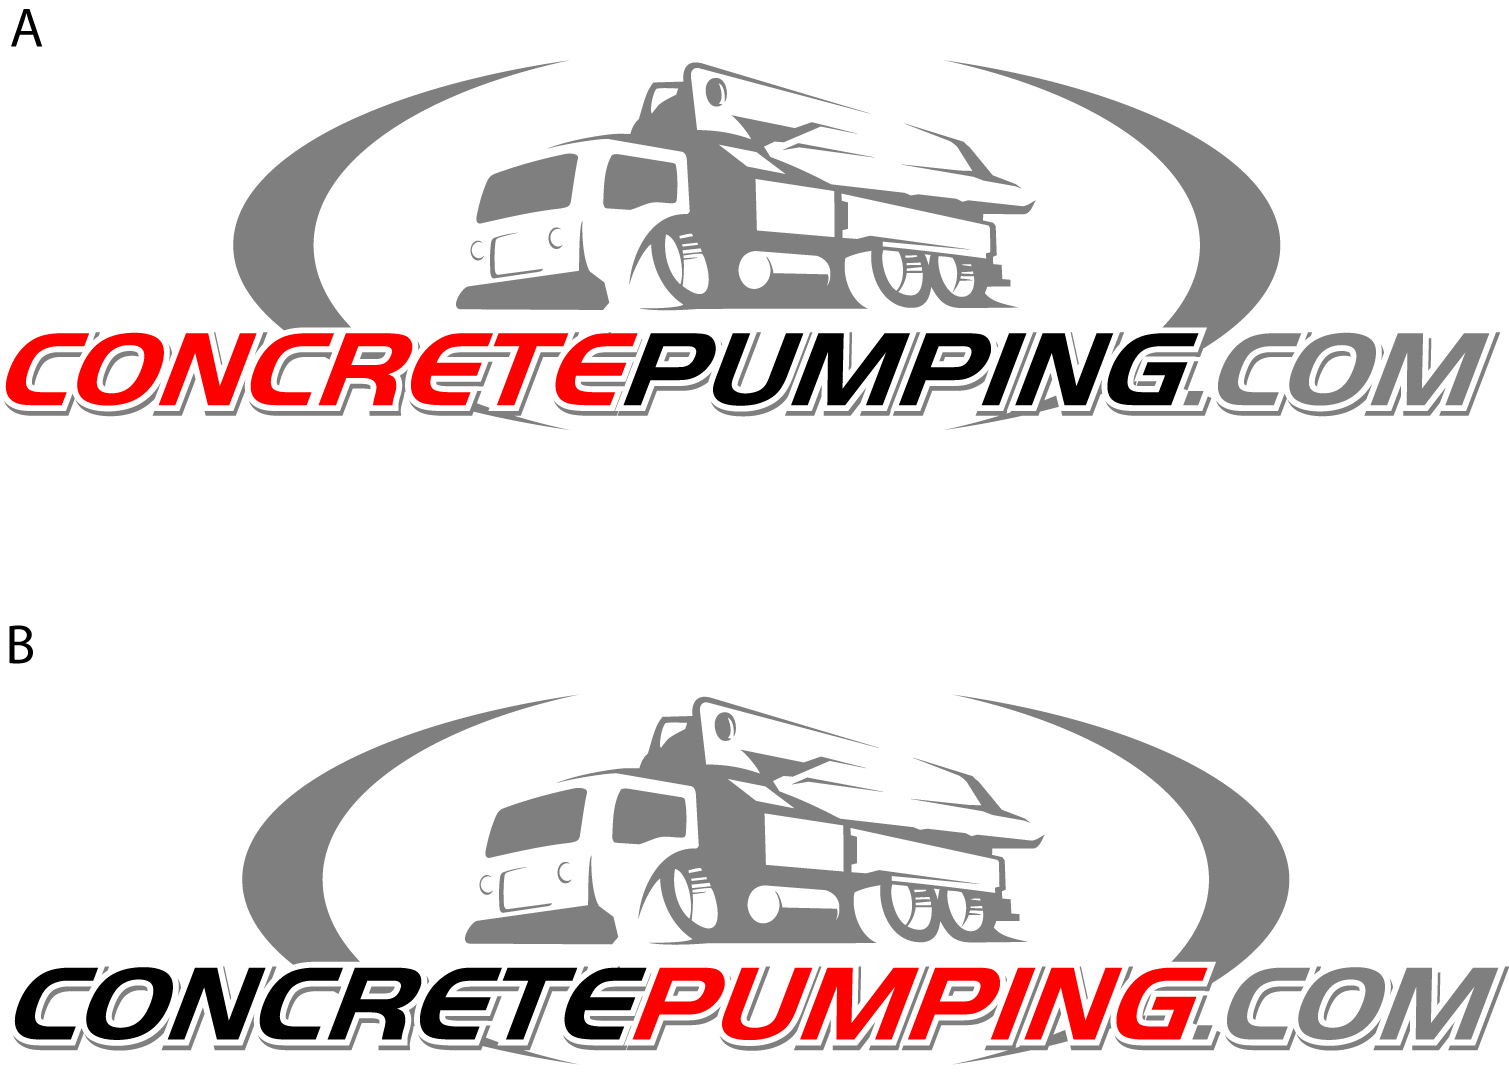 Concrete pumping dot com logo.jpg